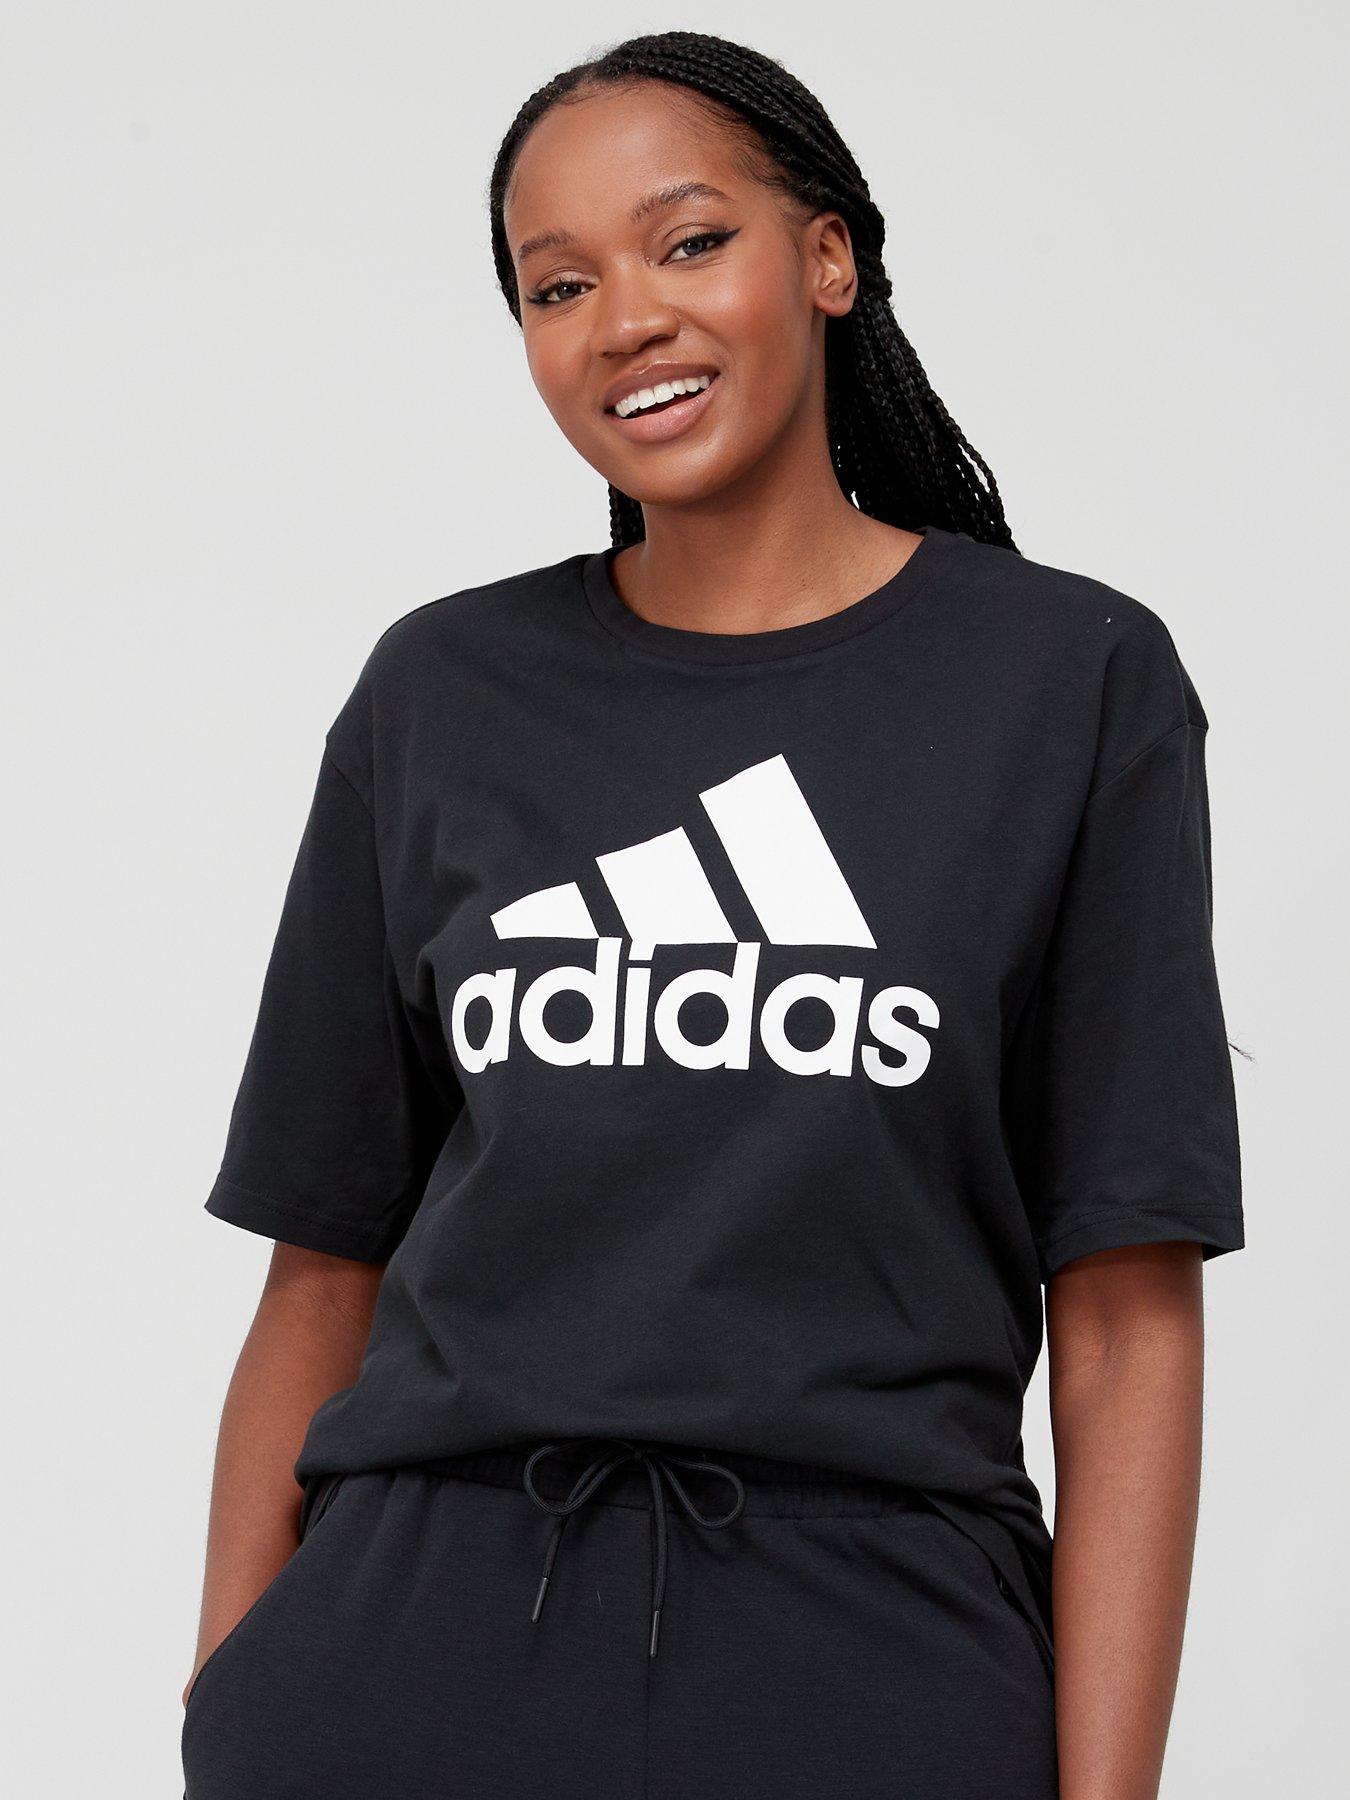 adidas Originals Plus essentials T-shirt with central logo in black